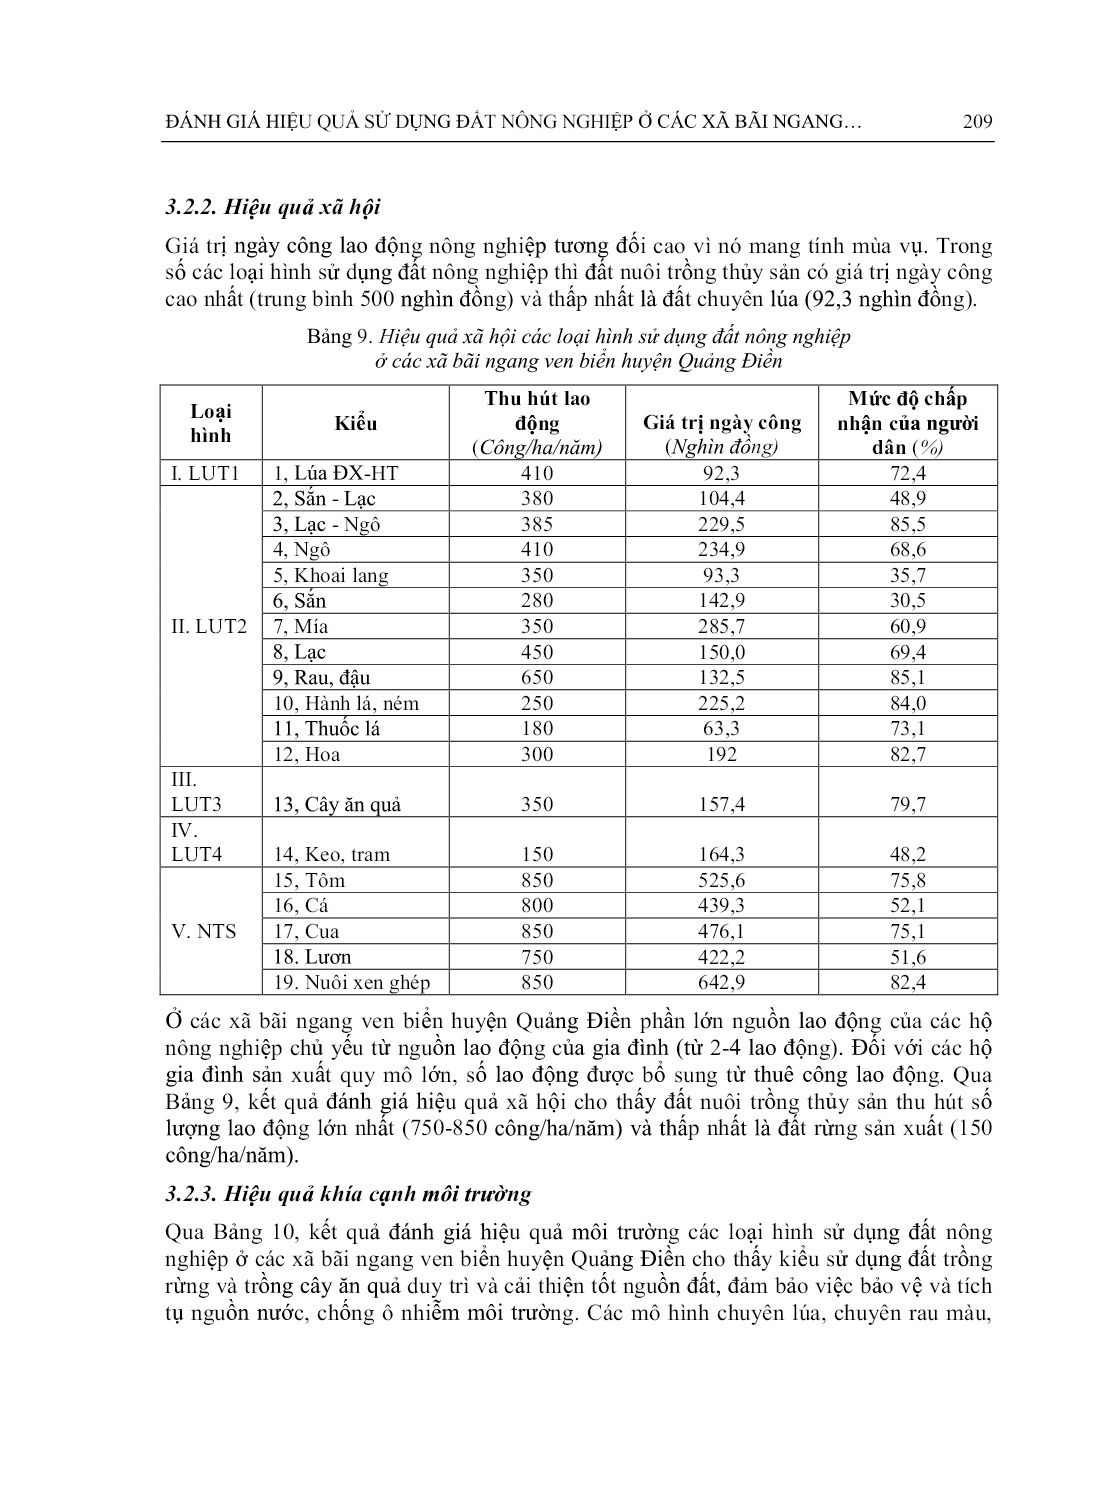 Đánh giá hiệu quả sử dụng đất nông nghiệp ở các xã bãi ngang ven biển huyện Quảng Điền, tỉnh Thừa Thiên Huế trang 9